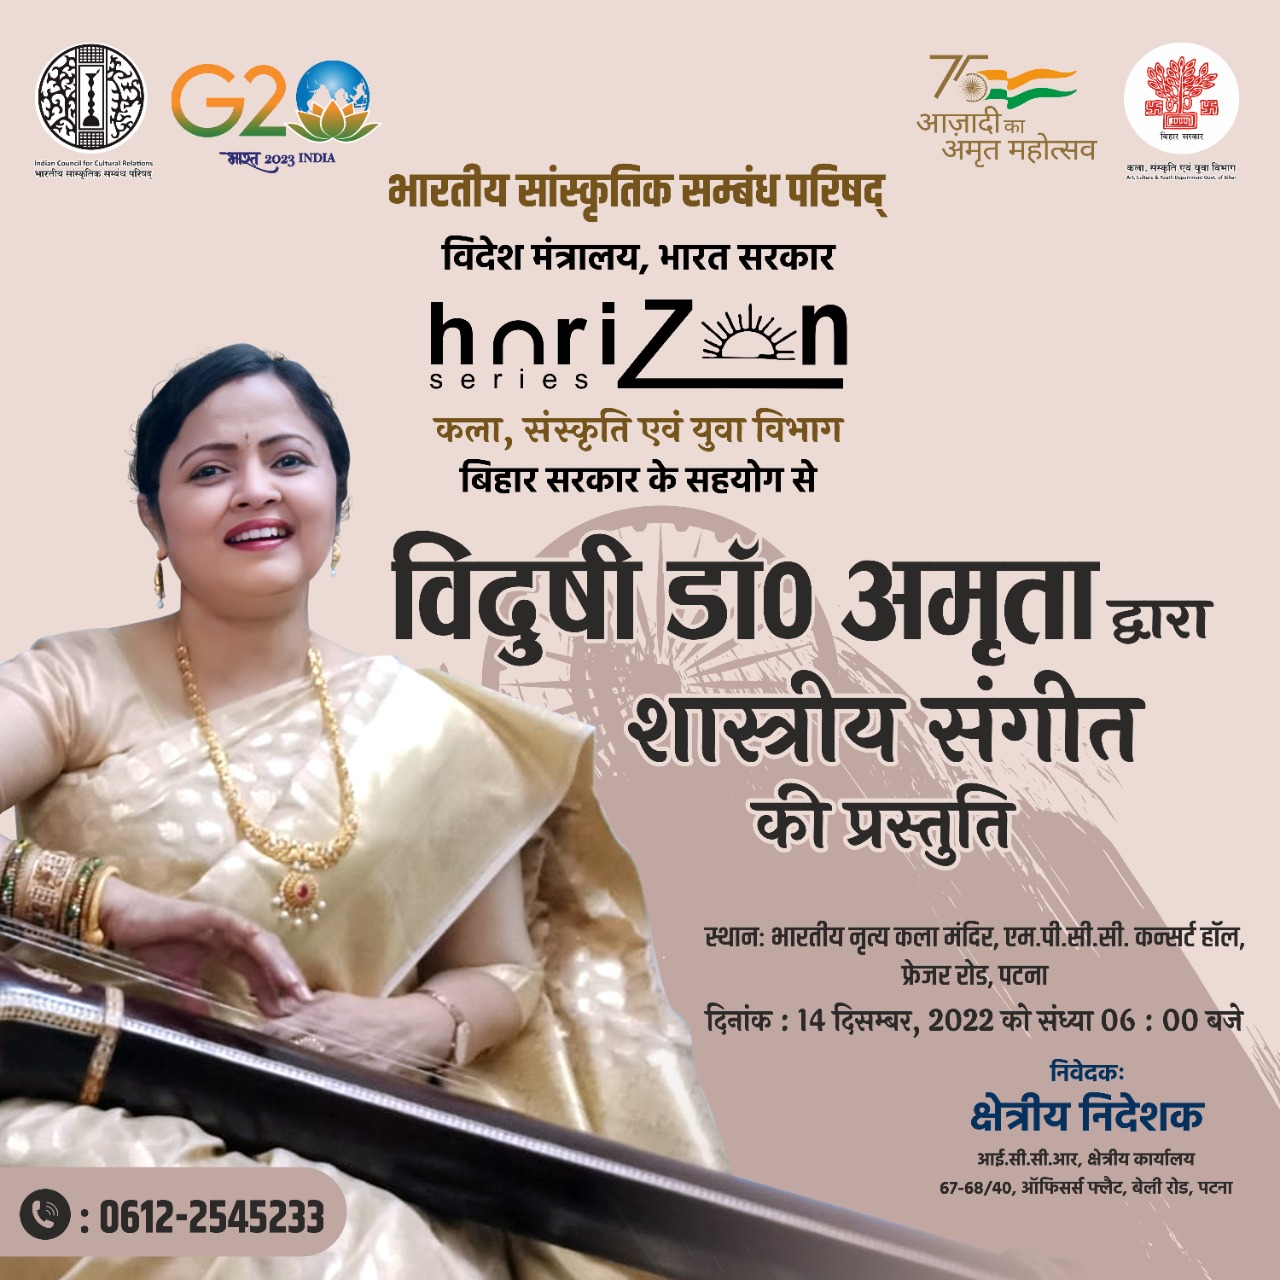 भारतीय सांस्कृतिक संबंध परिषद, क्षेत्रीय कार्यालय पटना द्वारा क्षितिज श्रृंखला कार्यक्रम के तहत दिनांक 14 दिसम्बर, 2022 को "शास्त्रीय संगीत " कार्यक्रम का ई-आमंत्रण पत्र